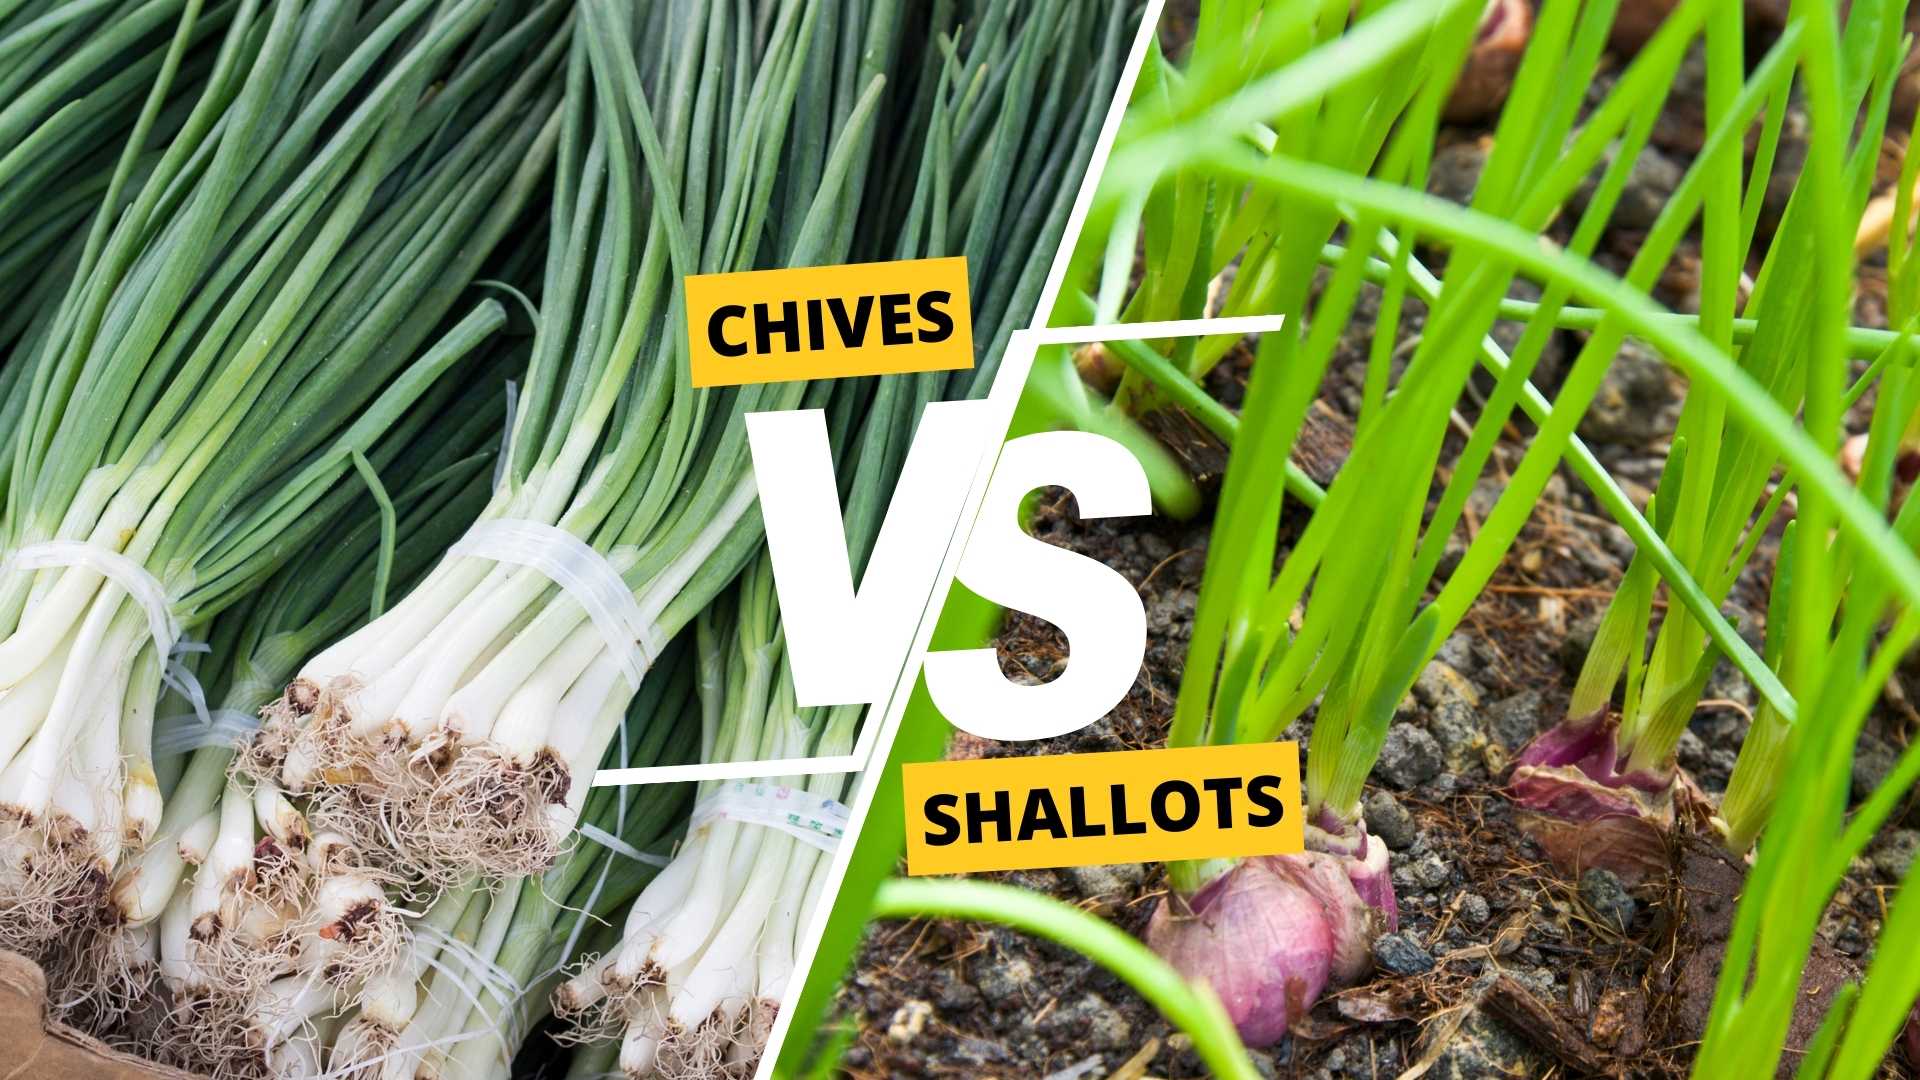 Chives vs Shallots